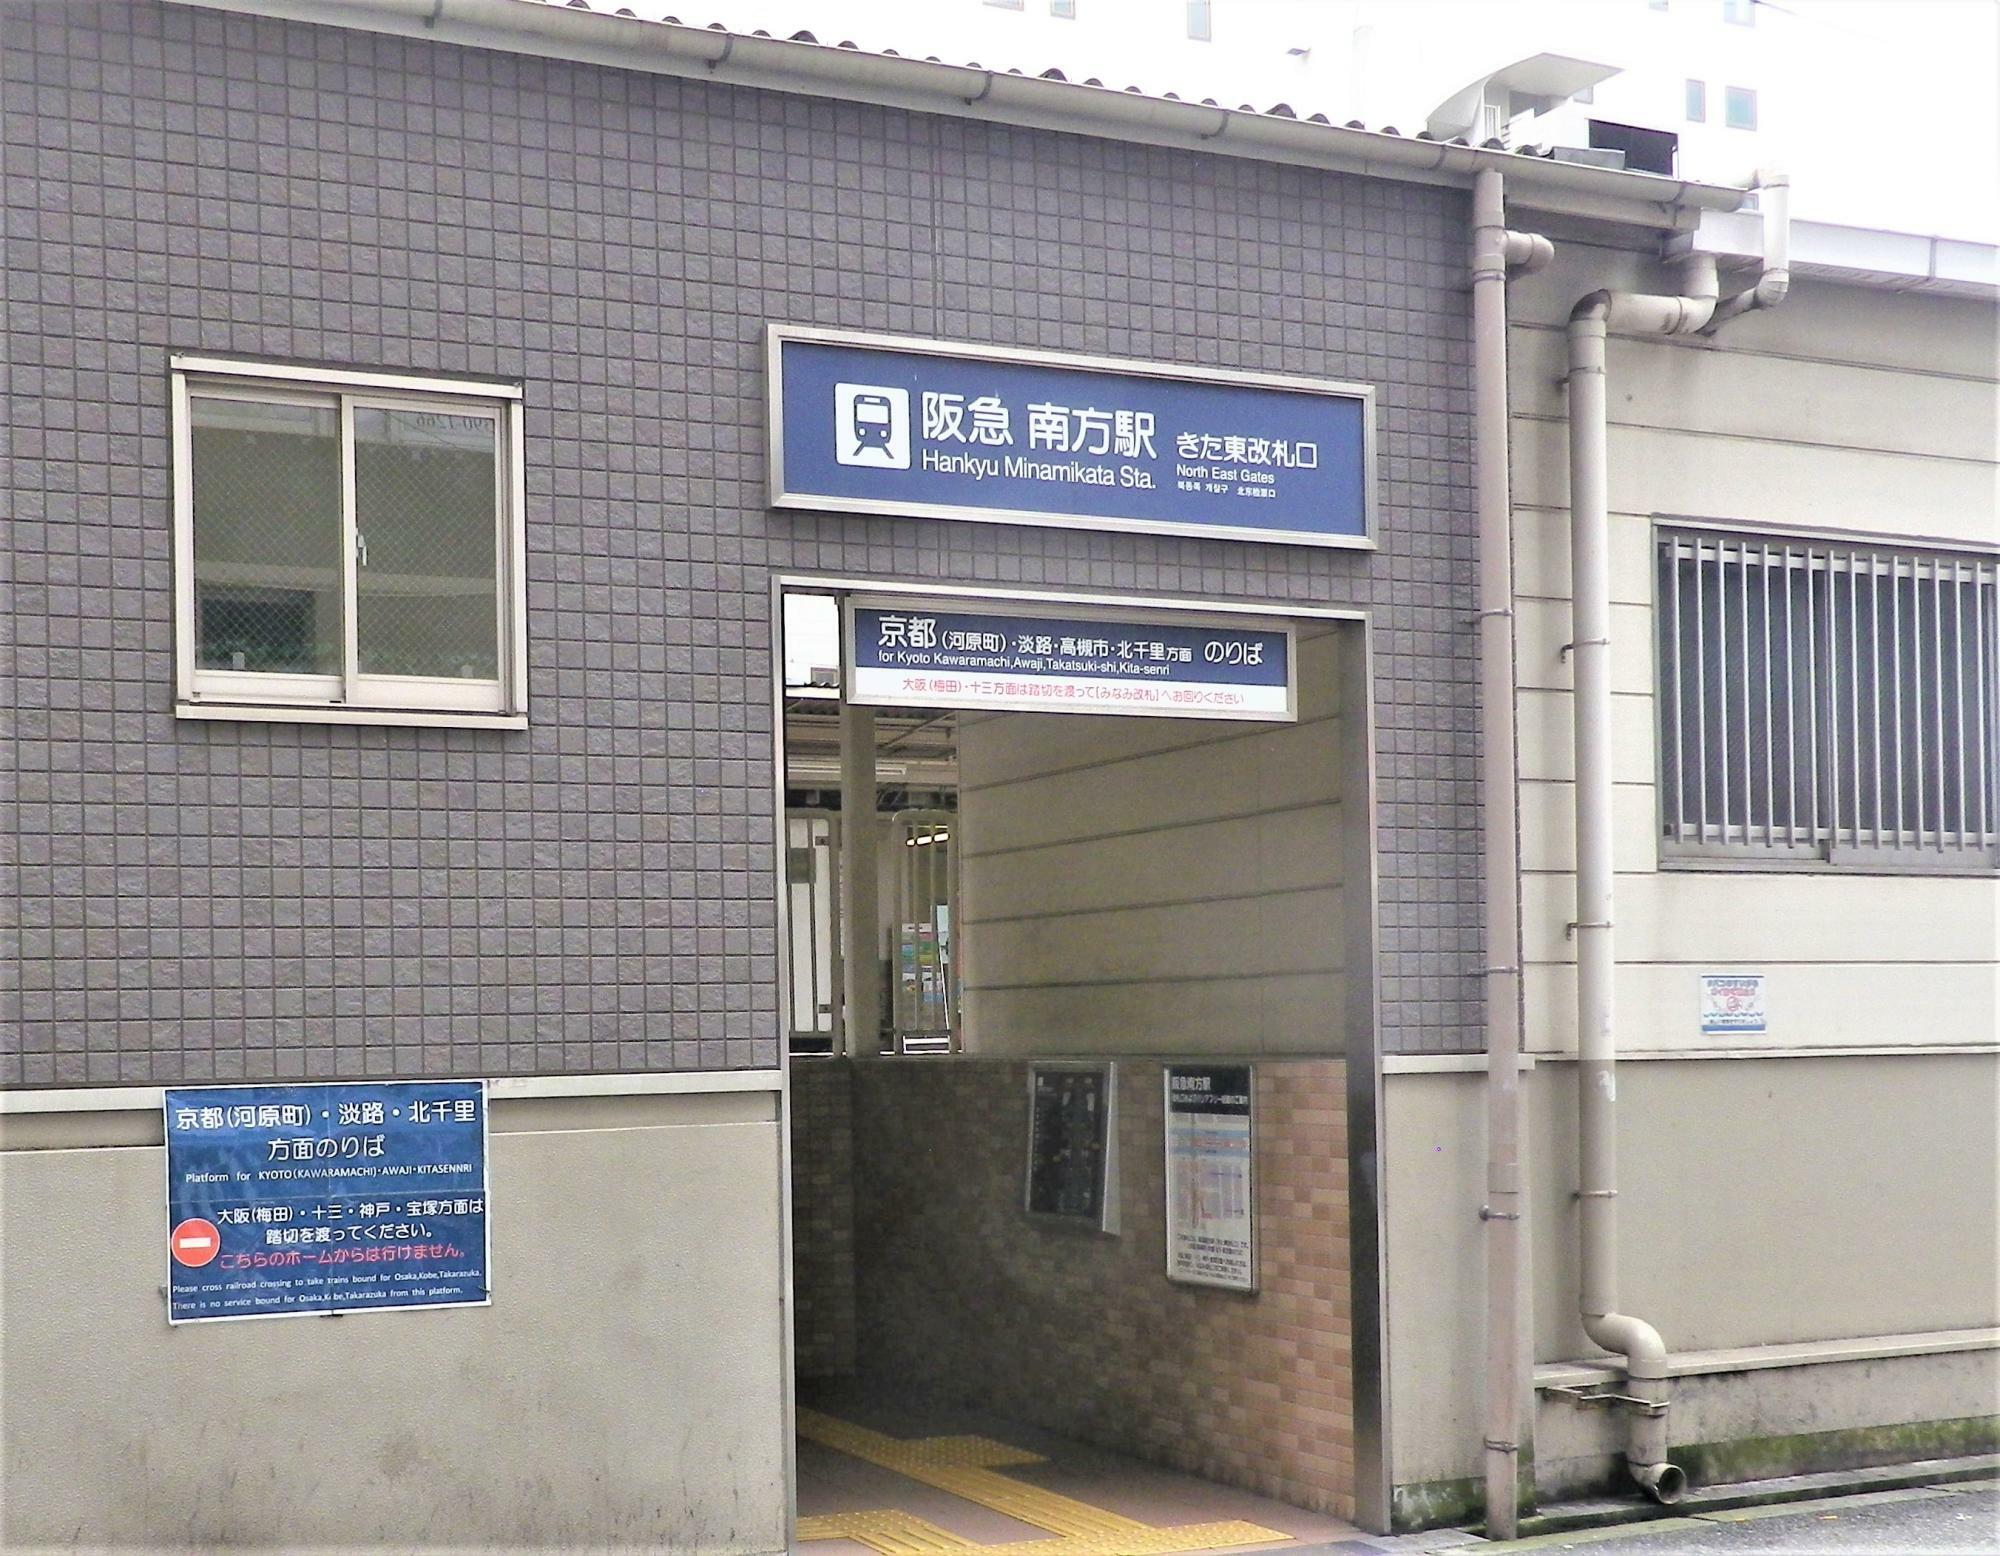 阪急電車南方駅の北東改札口。